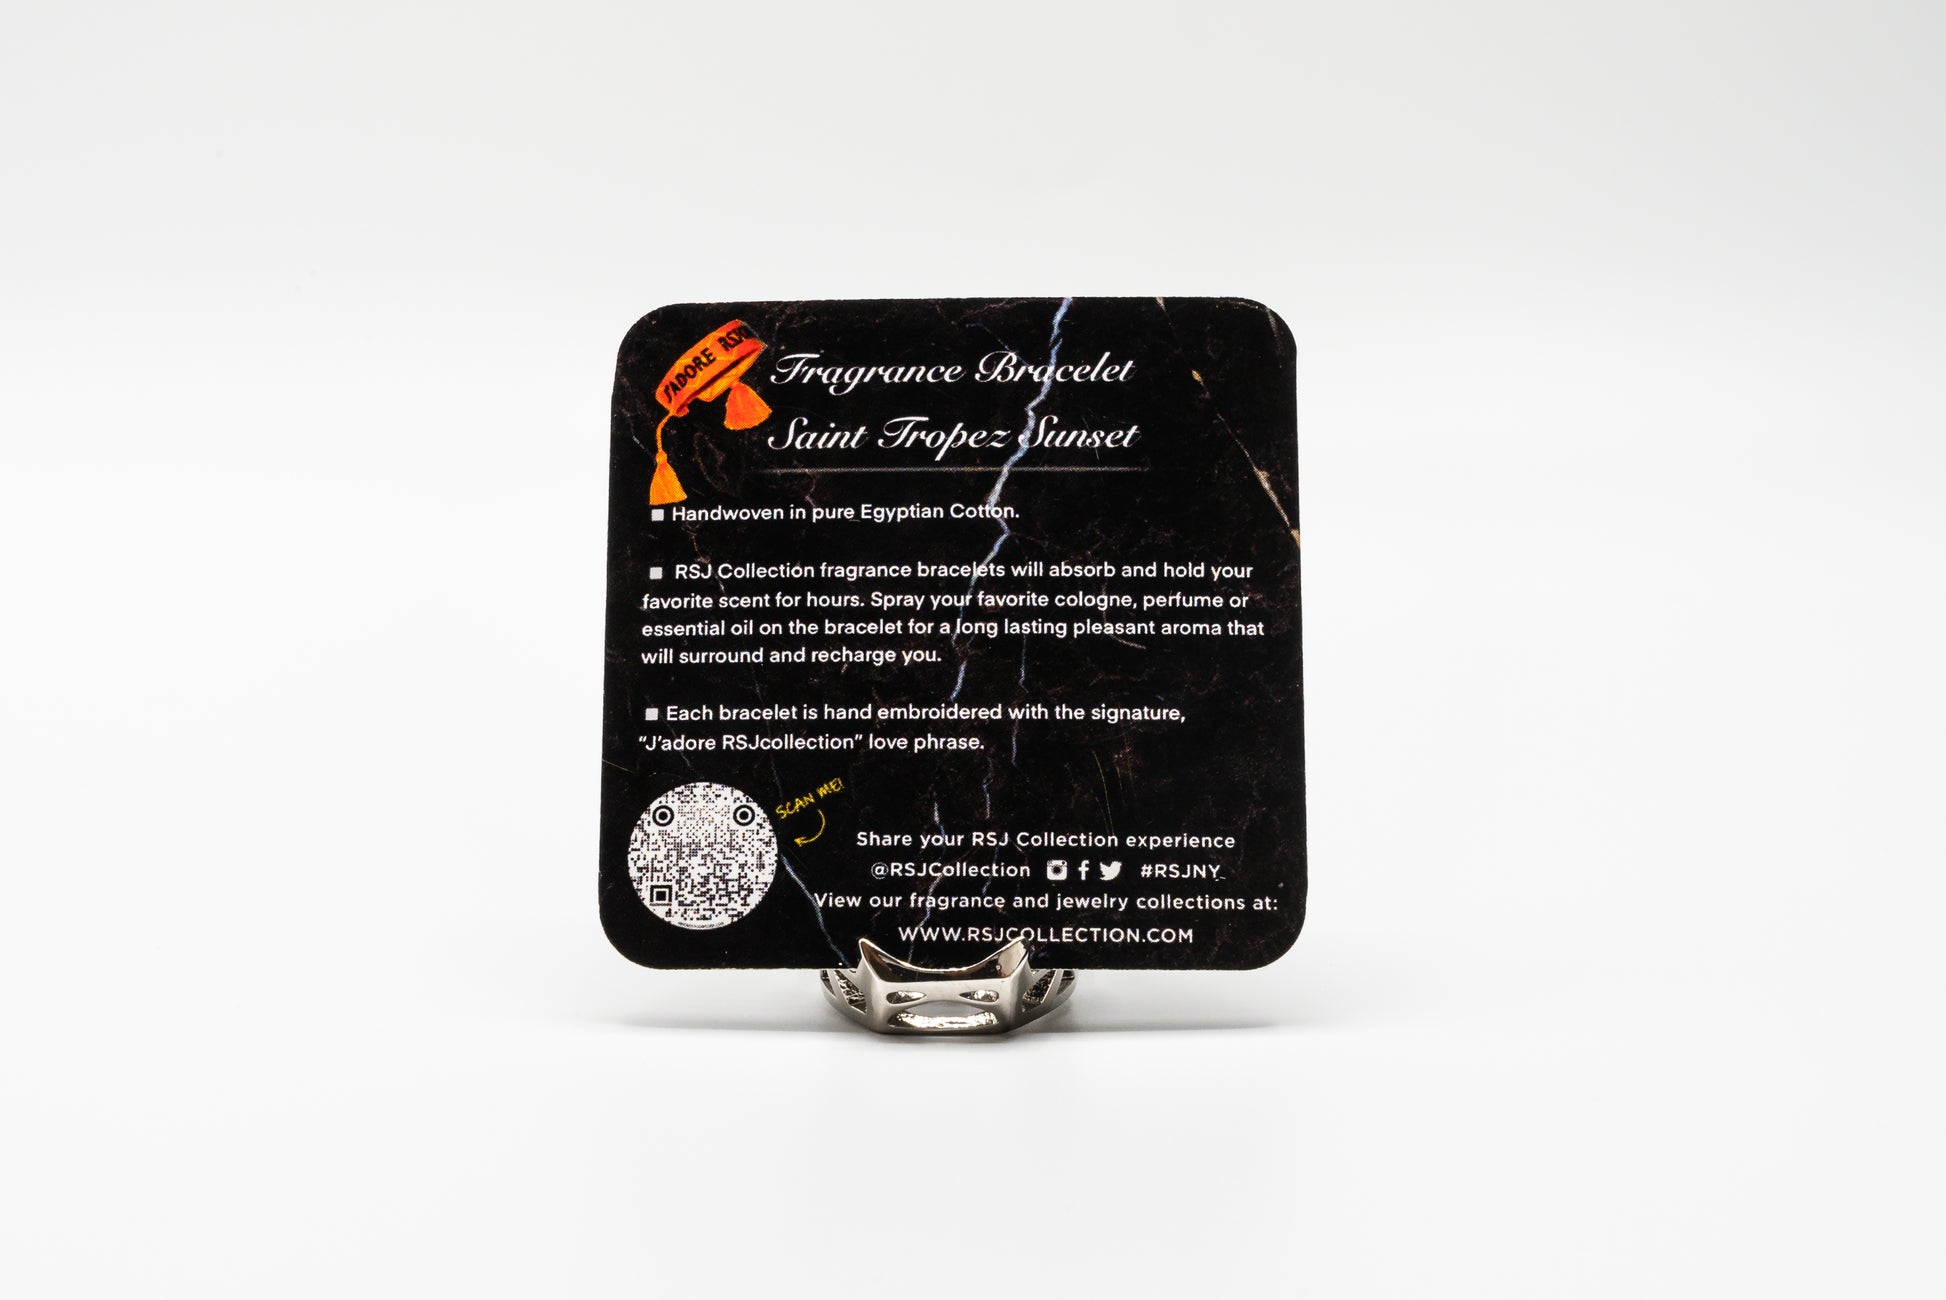 Saint Tropez Sunset fragrance bracelet-RSJ Collection LLC